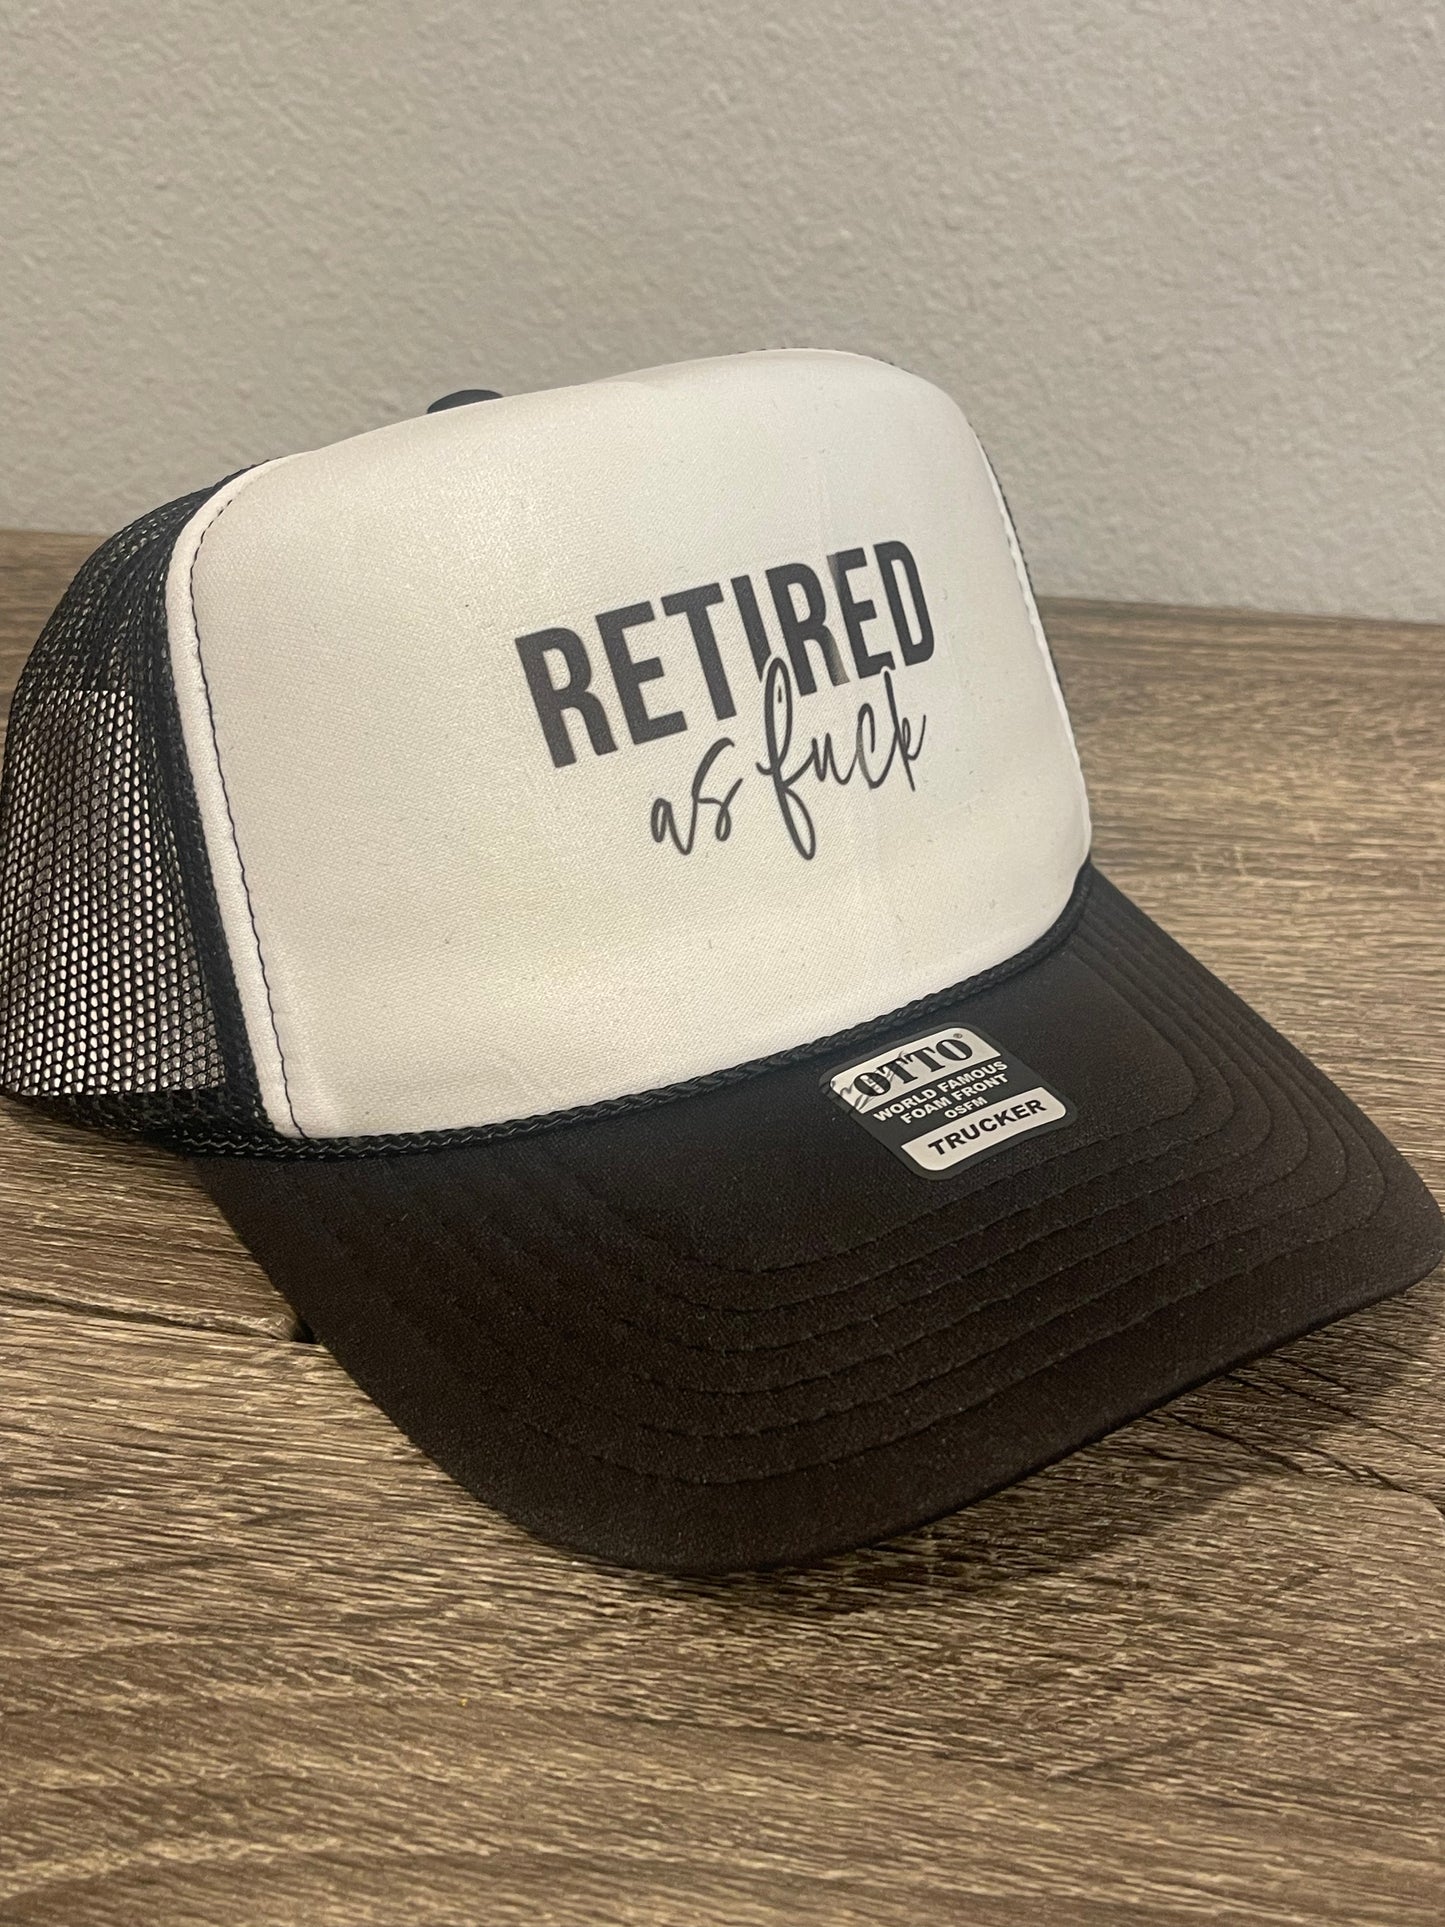 Trucker Hat- Retired as F